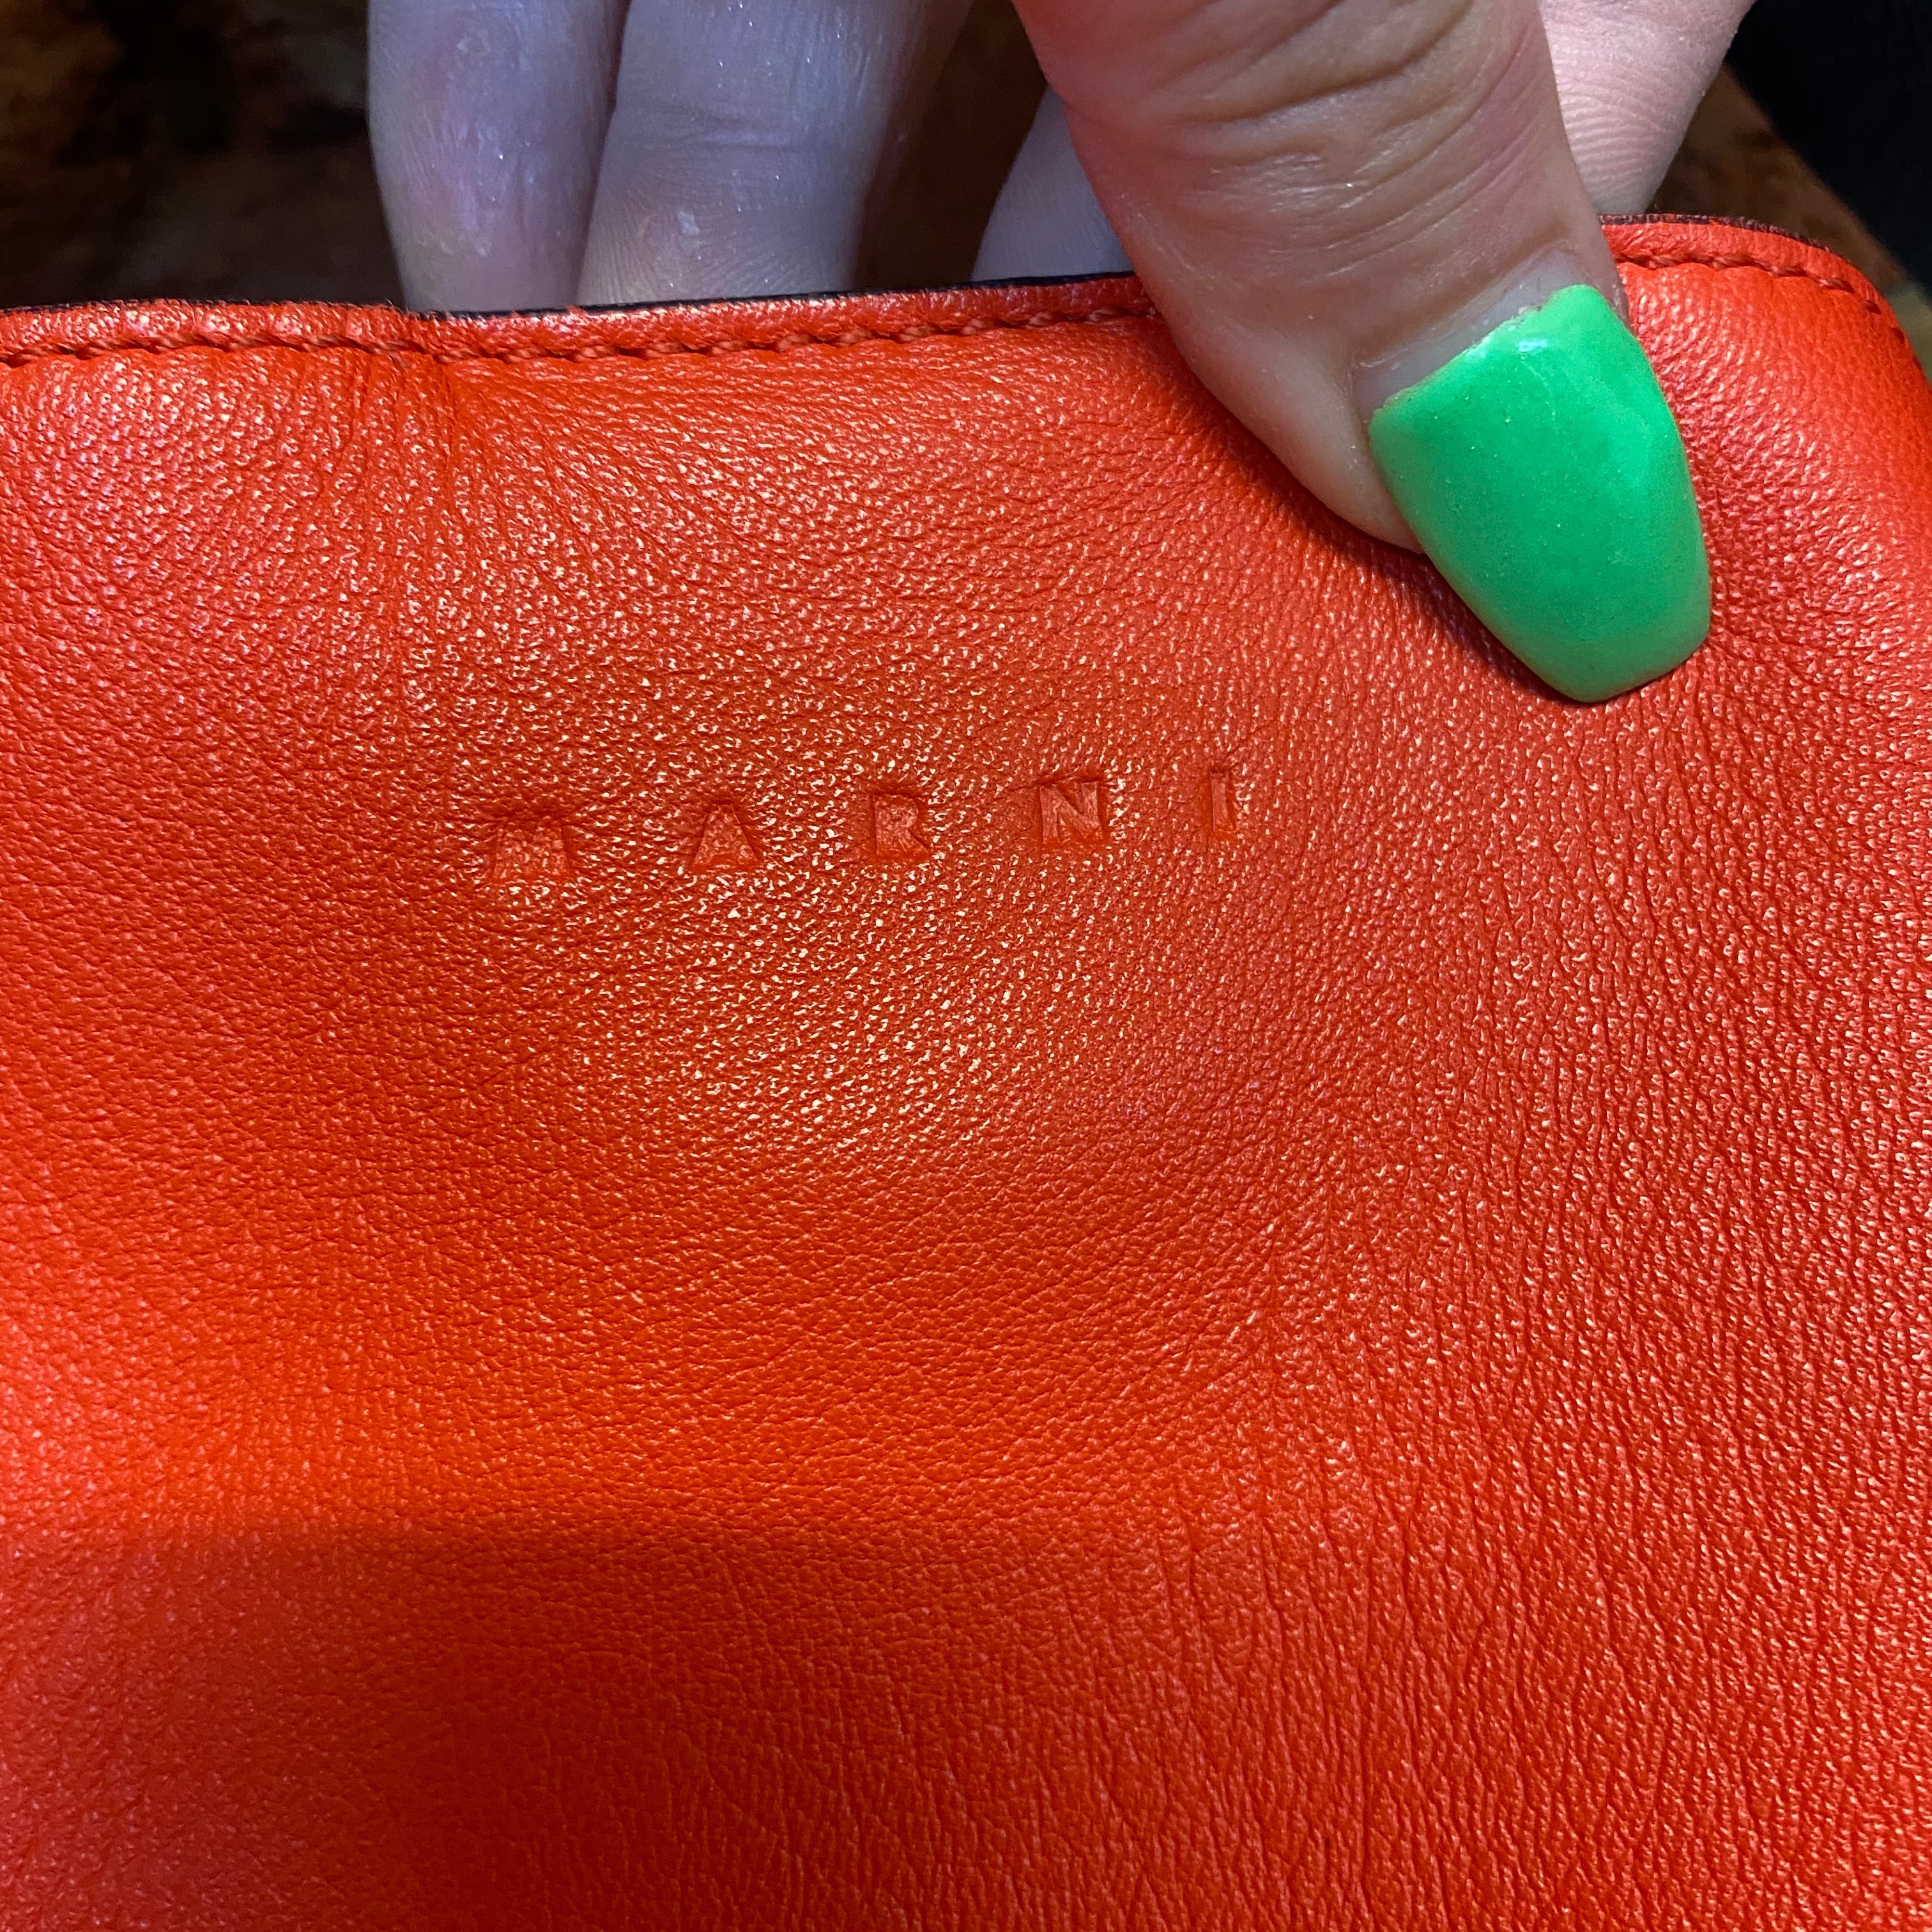 MARNI tri-colour leather handbag